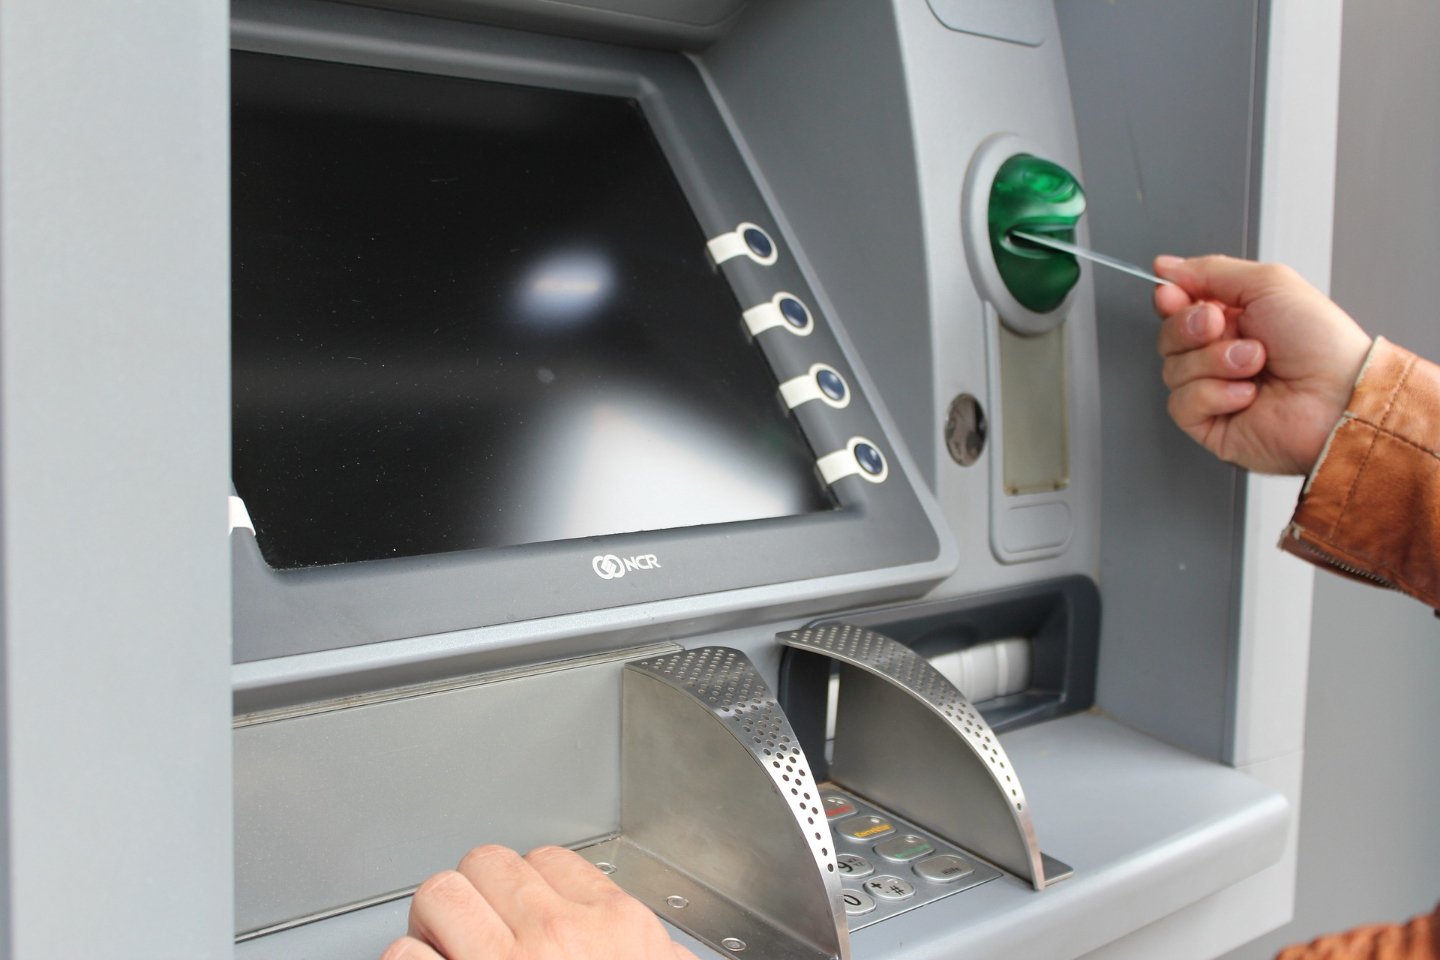 Новости Казахстана / Общество в Казахстане / Существуют ли секретные наборы цифр в банкоматах РК?